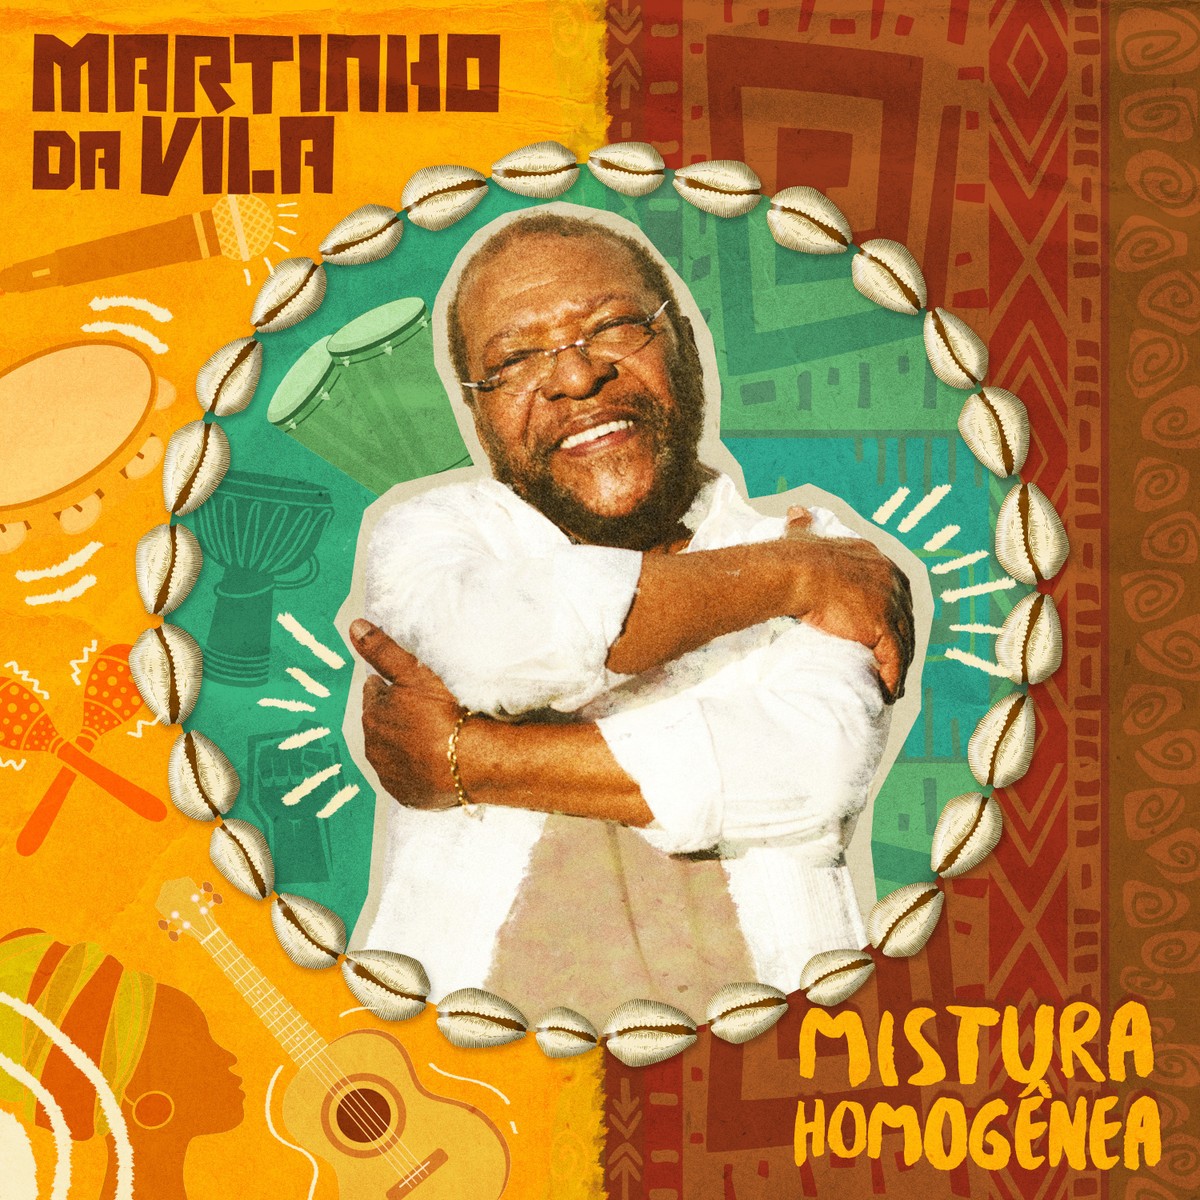 Martinho da Vila o álbum ‘Mistura lançado’ |  Weblog do Mauro Ferreira